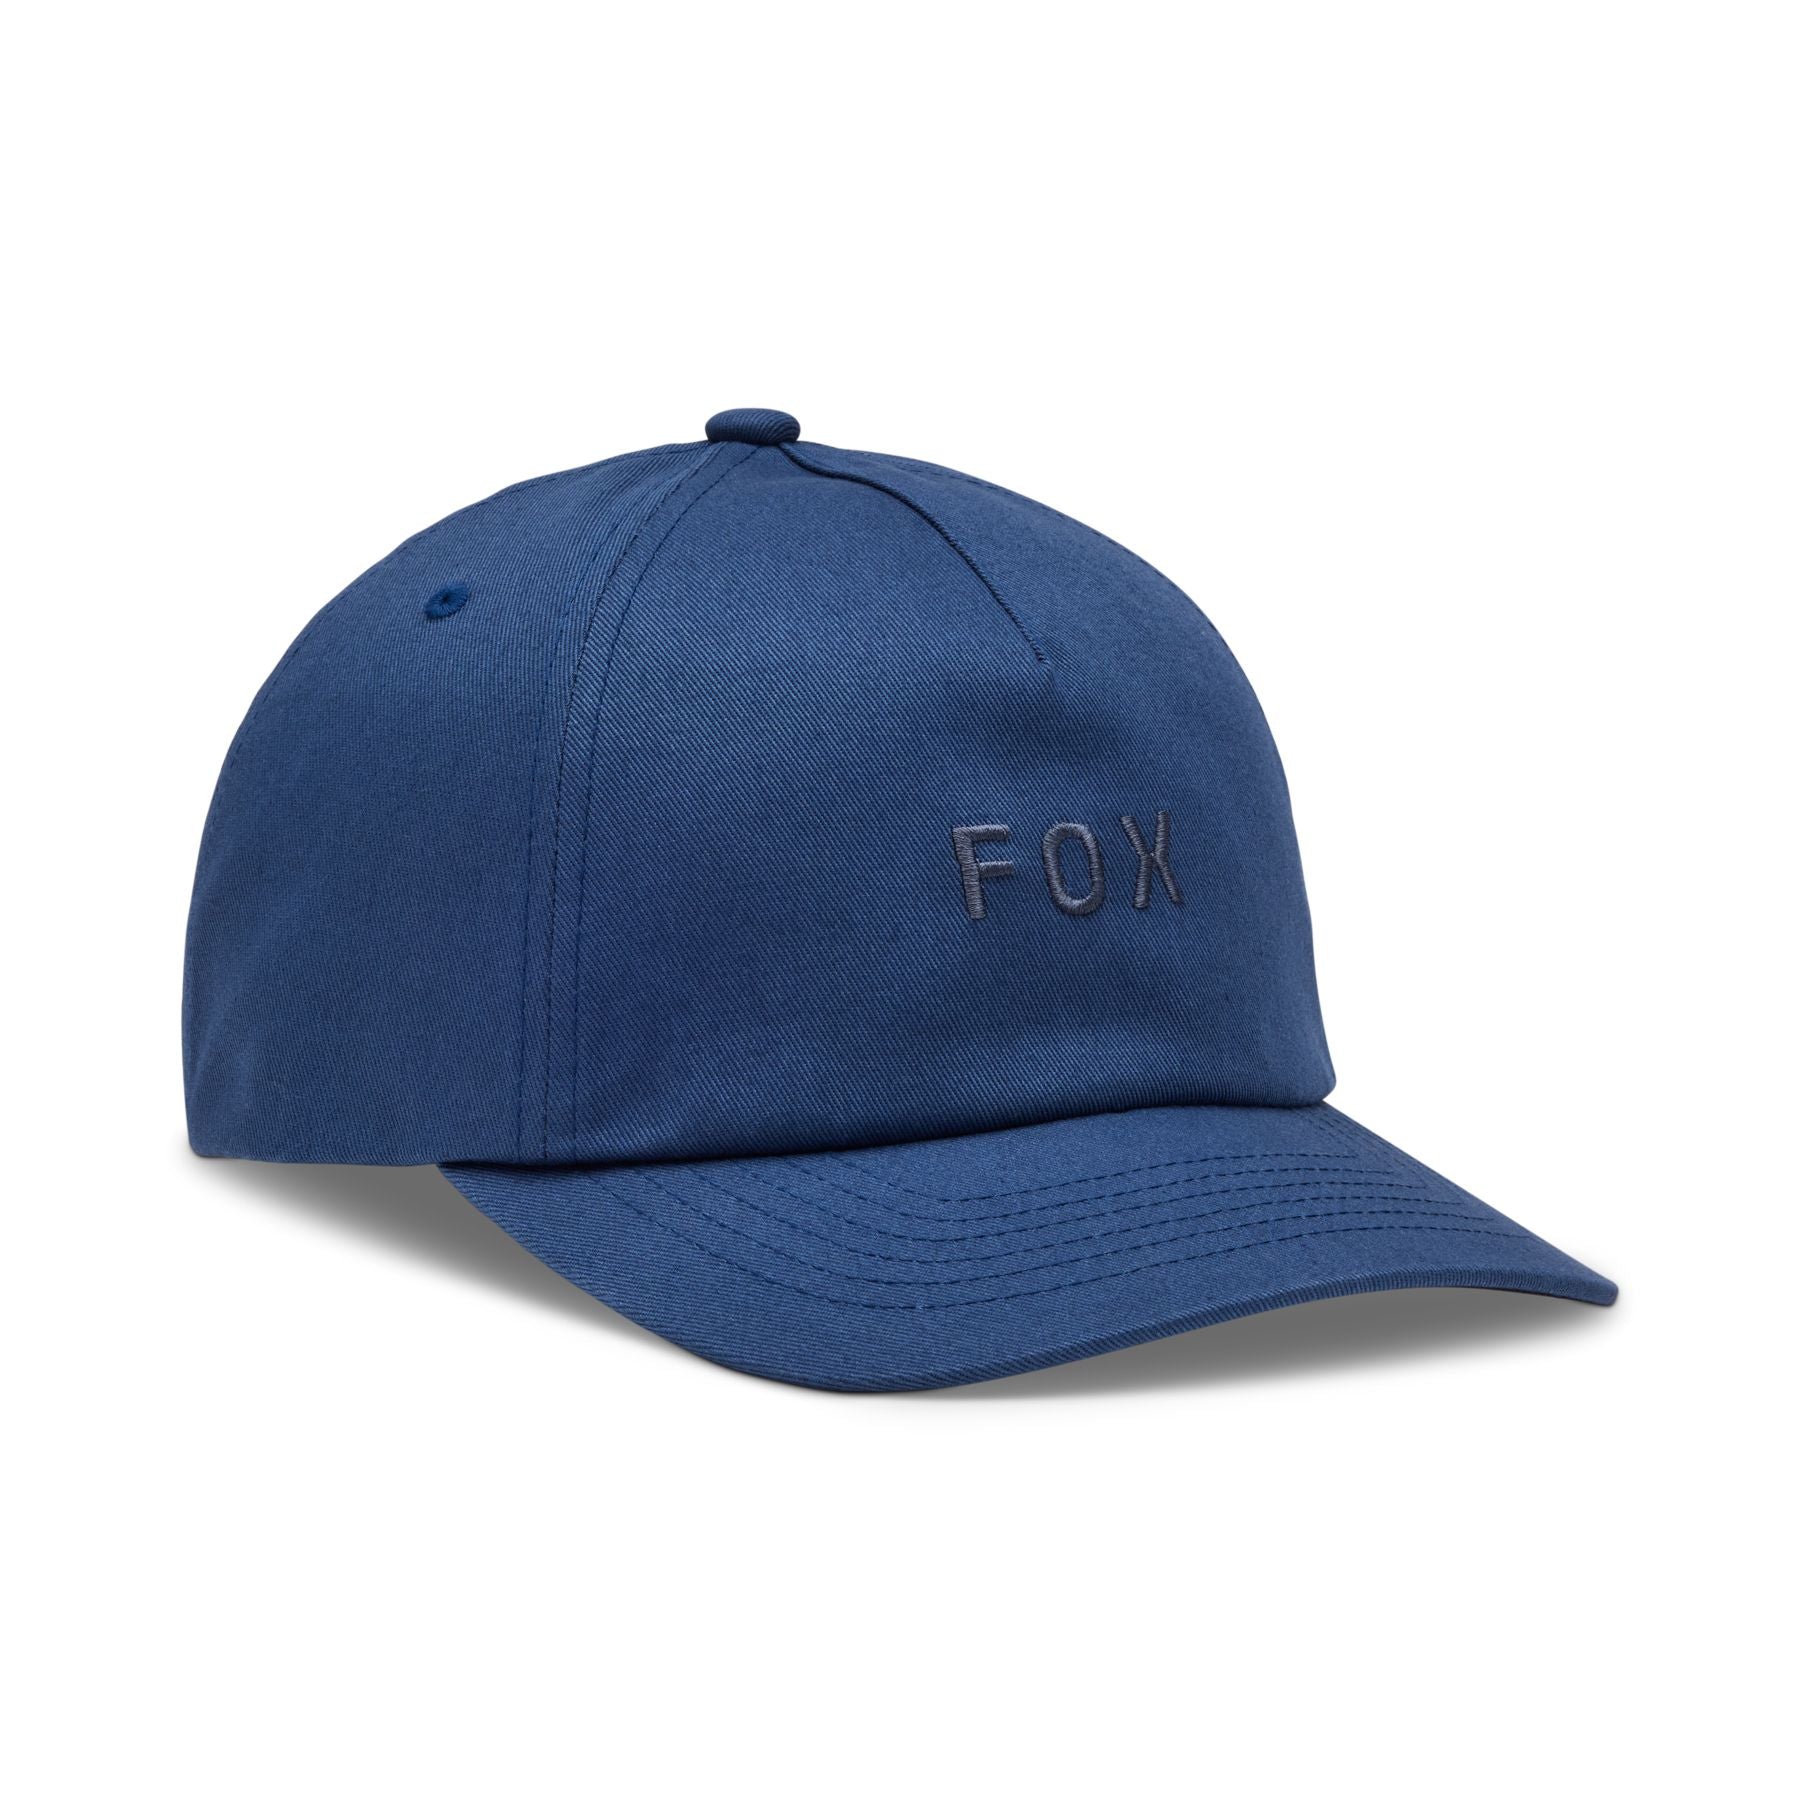 Fox Wordmark Adjustable Hat